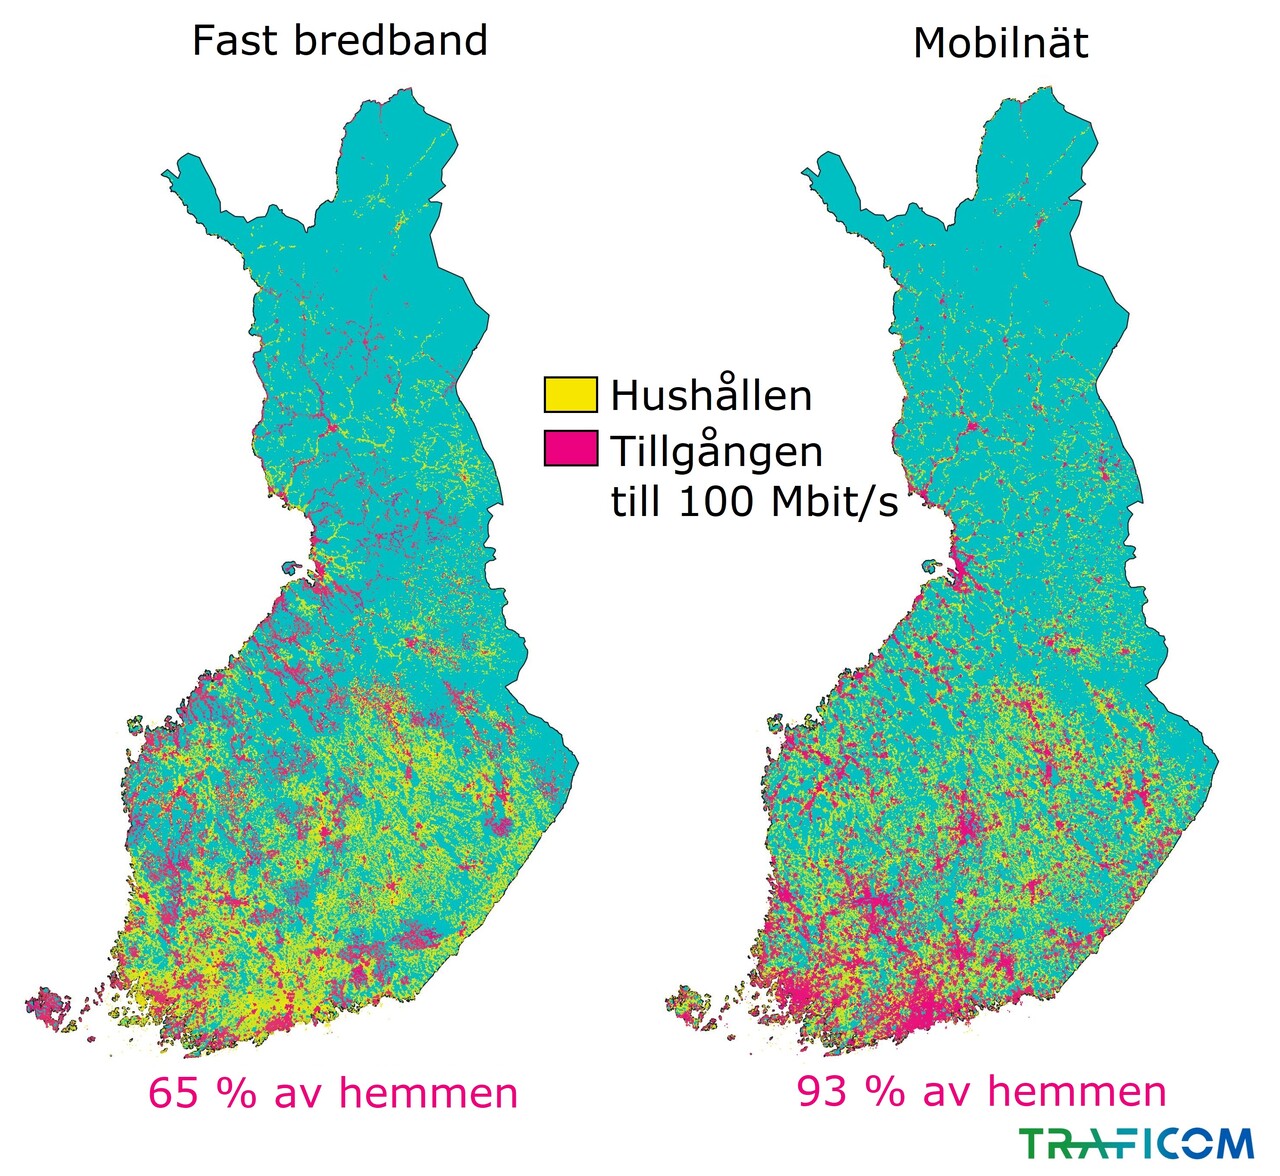 På kartan visas tillgången till fast bredband och mobilnät på 100 Mbit/s i hushåll i Finland i slutet av 2020: Fast bredband i 65 procent av hushållen och mobilnät i 93 procent av hushållen. 